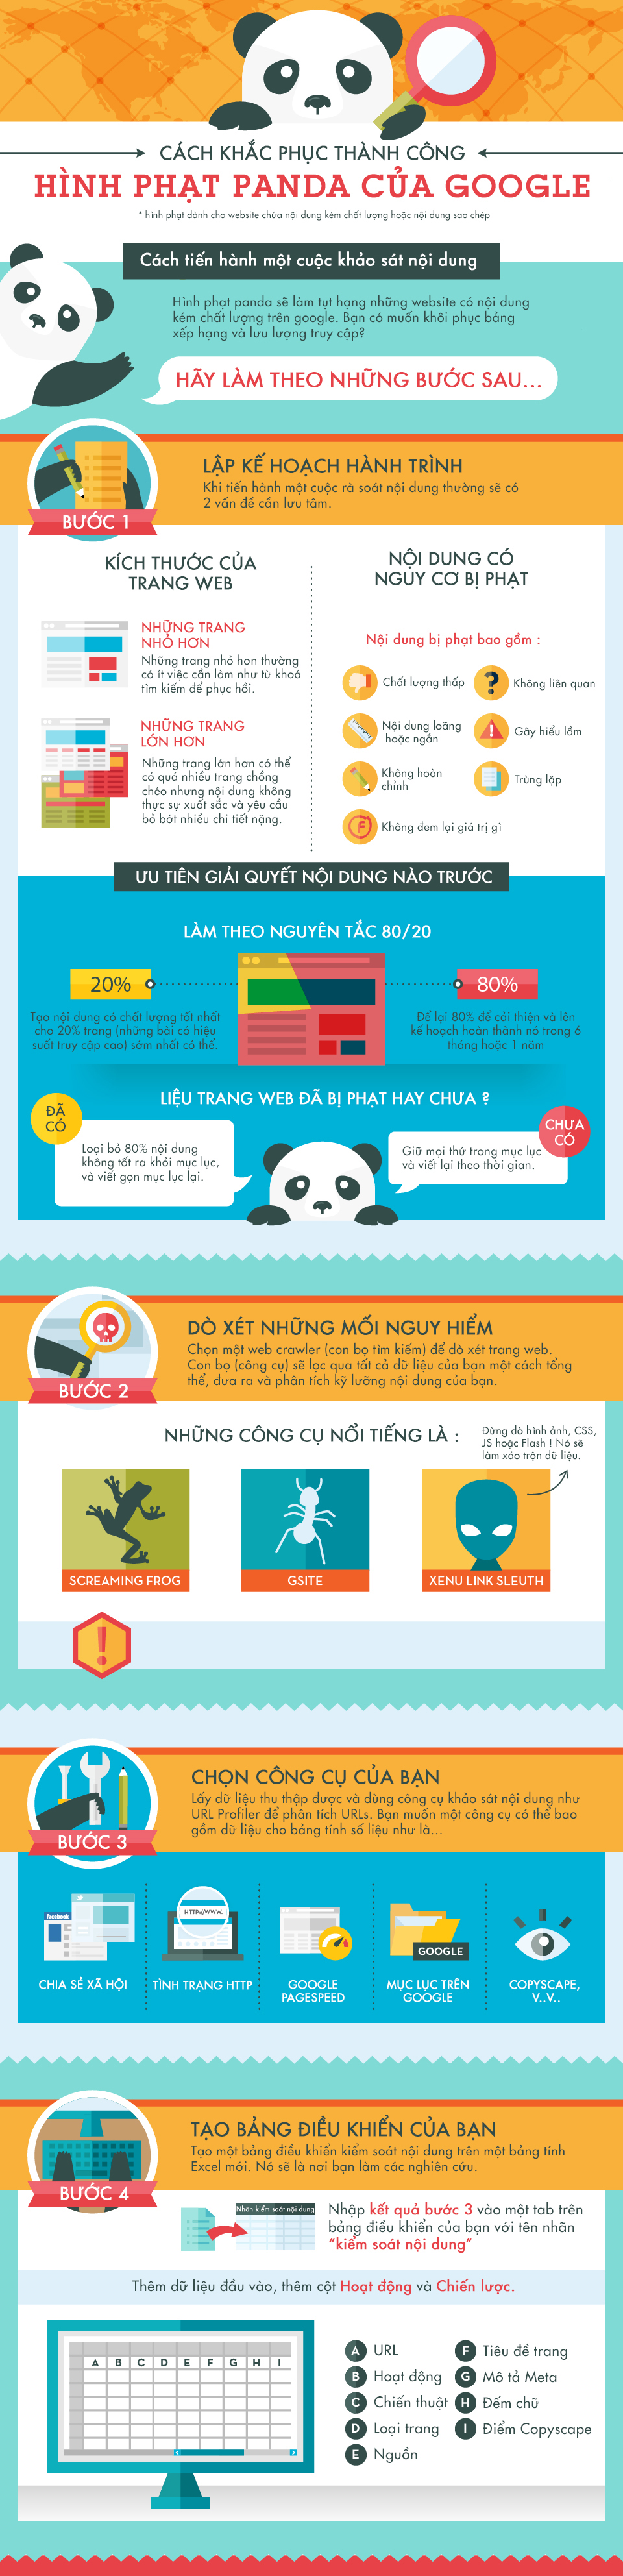 Infographic Cách khắc phục thành công hình phạt Panda > Infographic Cách khắc phục thành công hình phạt Panda Google